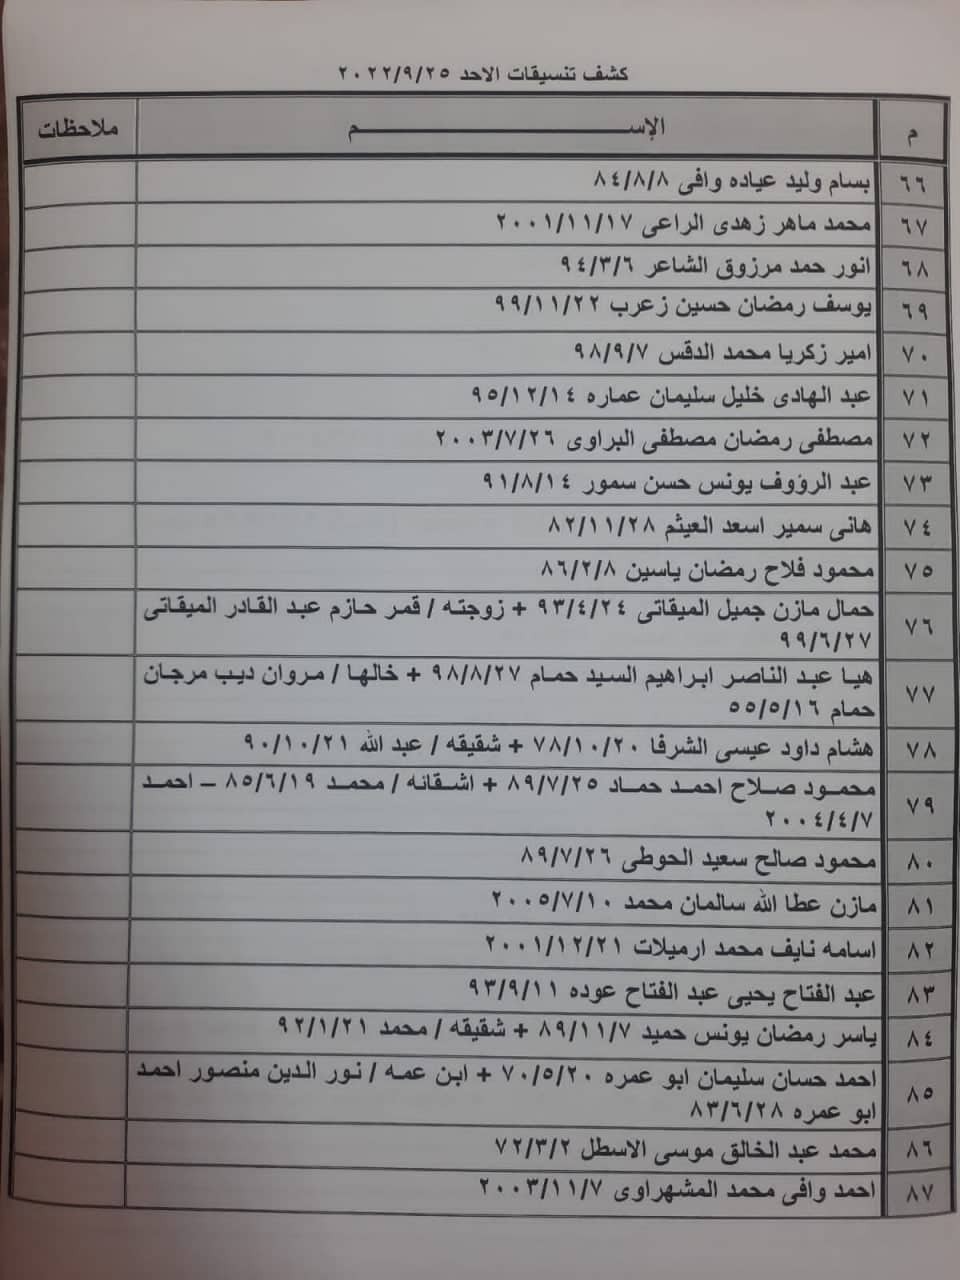 بالأسماء: كشف "تنسيقات مصرية" للسفر عبر معبر رفح البري يوم الأحد 25 سبتمبر